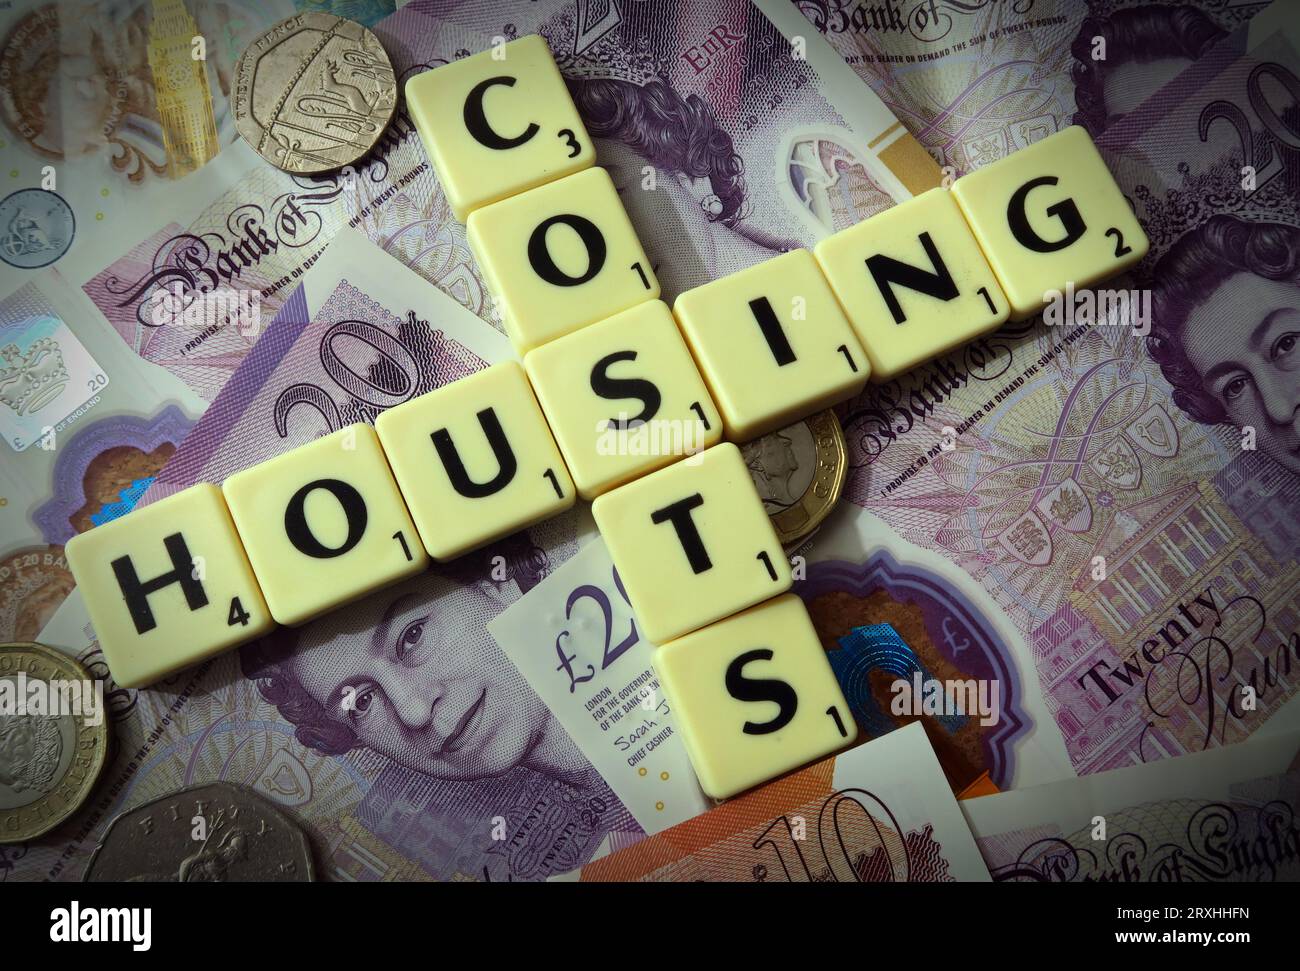 Wohnkosten - in Worten, Scrabble Briefe mit englischen und walisischen Sterling Bargeld - zwanzig Pfund, zehn Pfund, fünf Pfund Stockfoto